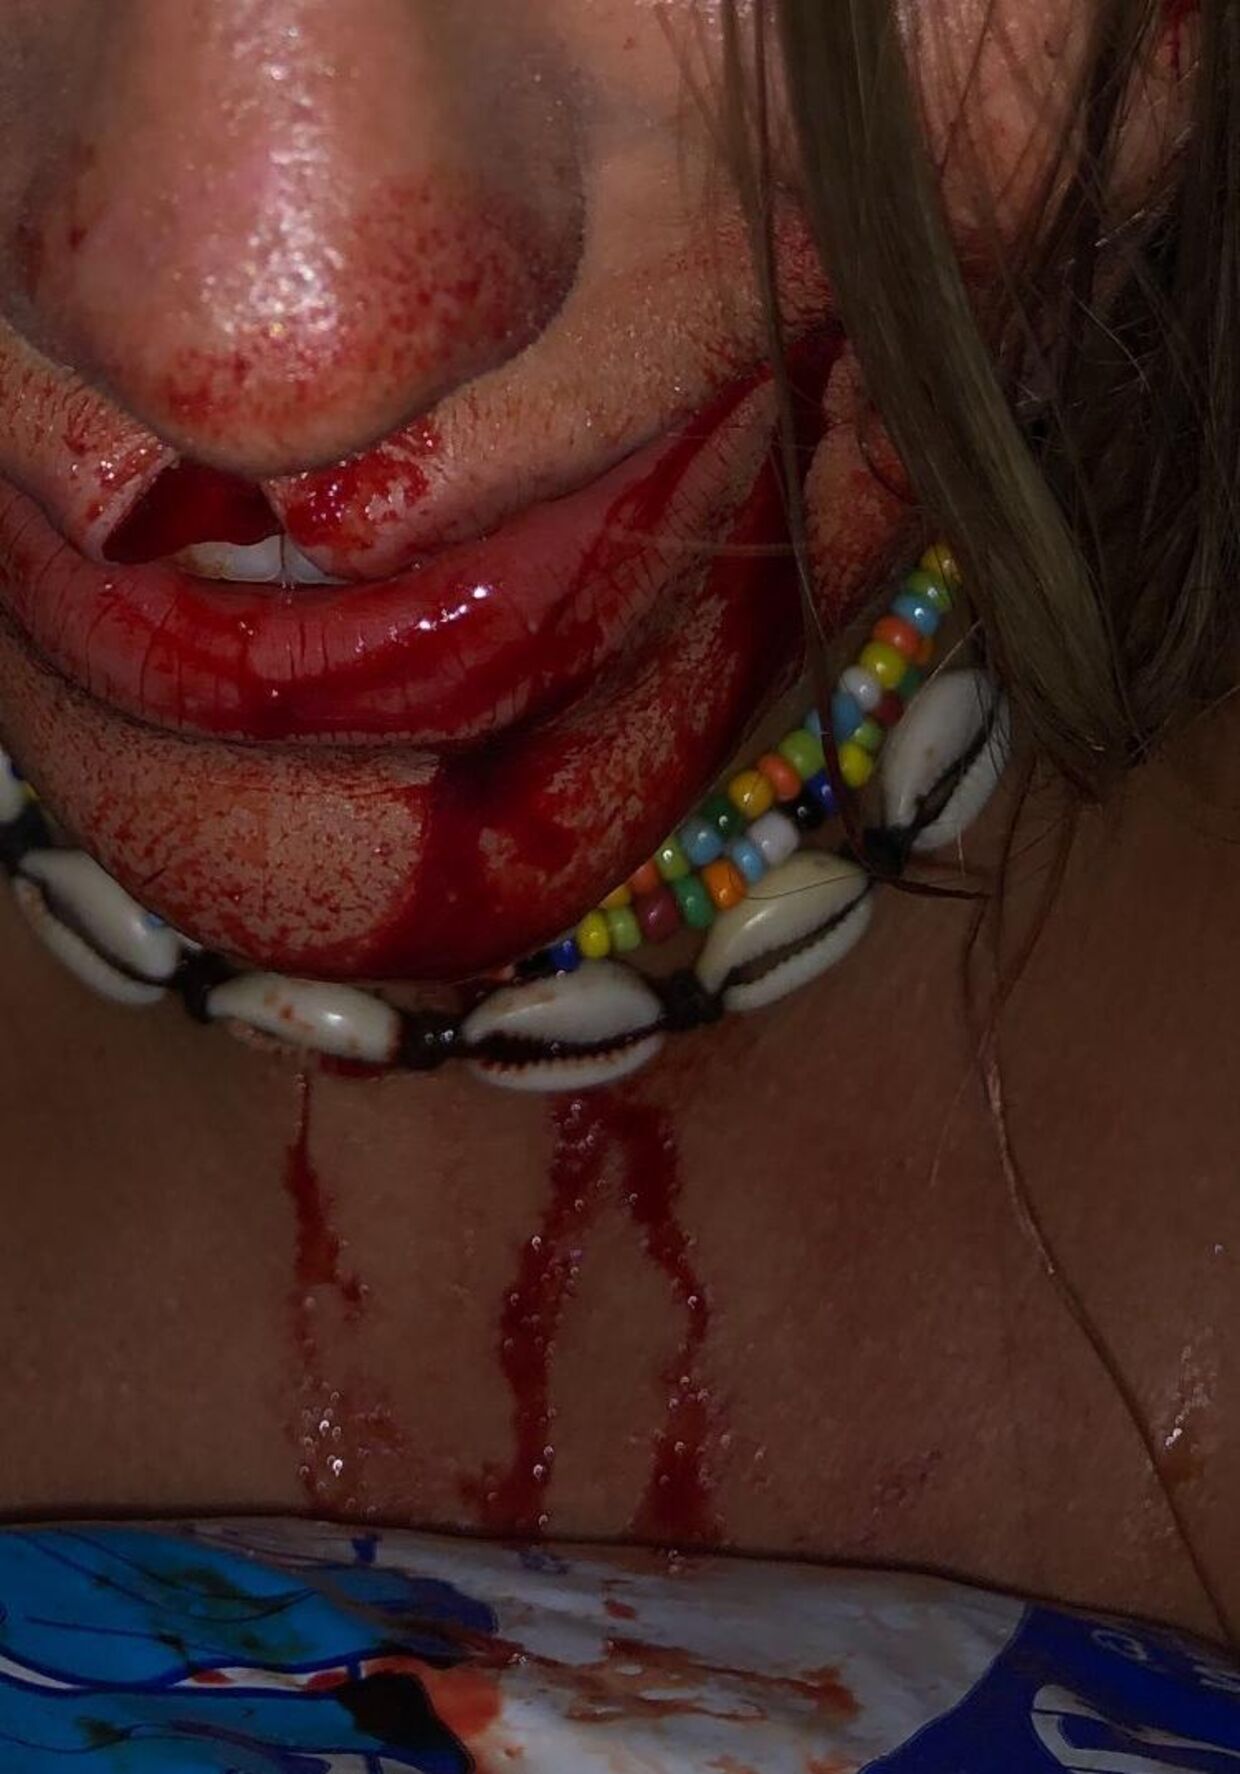 Hendes læbe blev skåret over af glasset, som danskeren kastede i hovedet på hende.